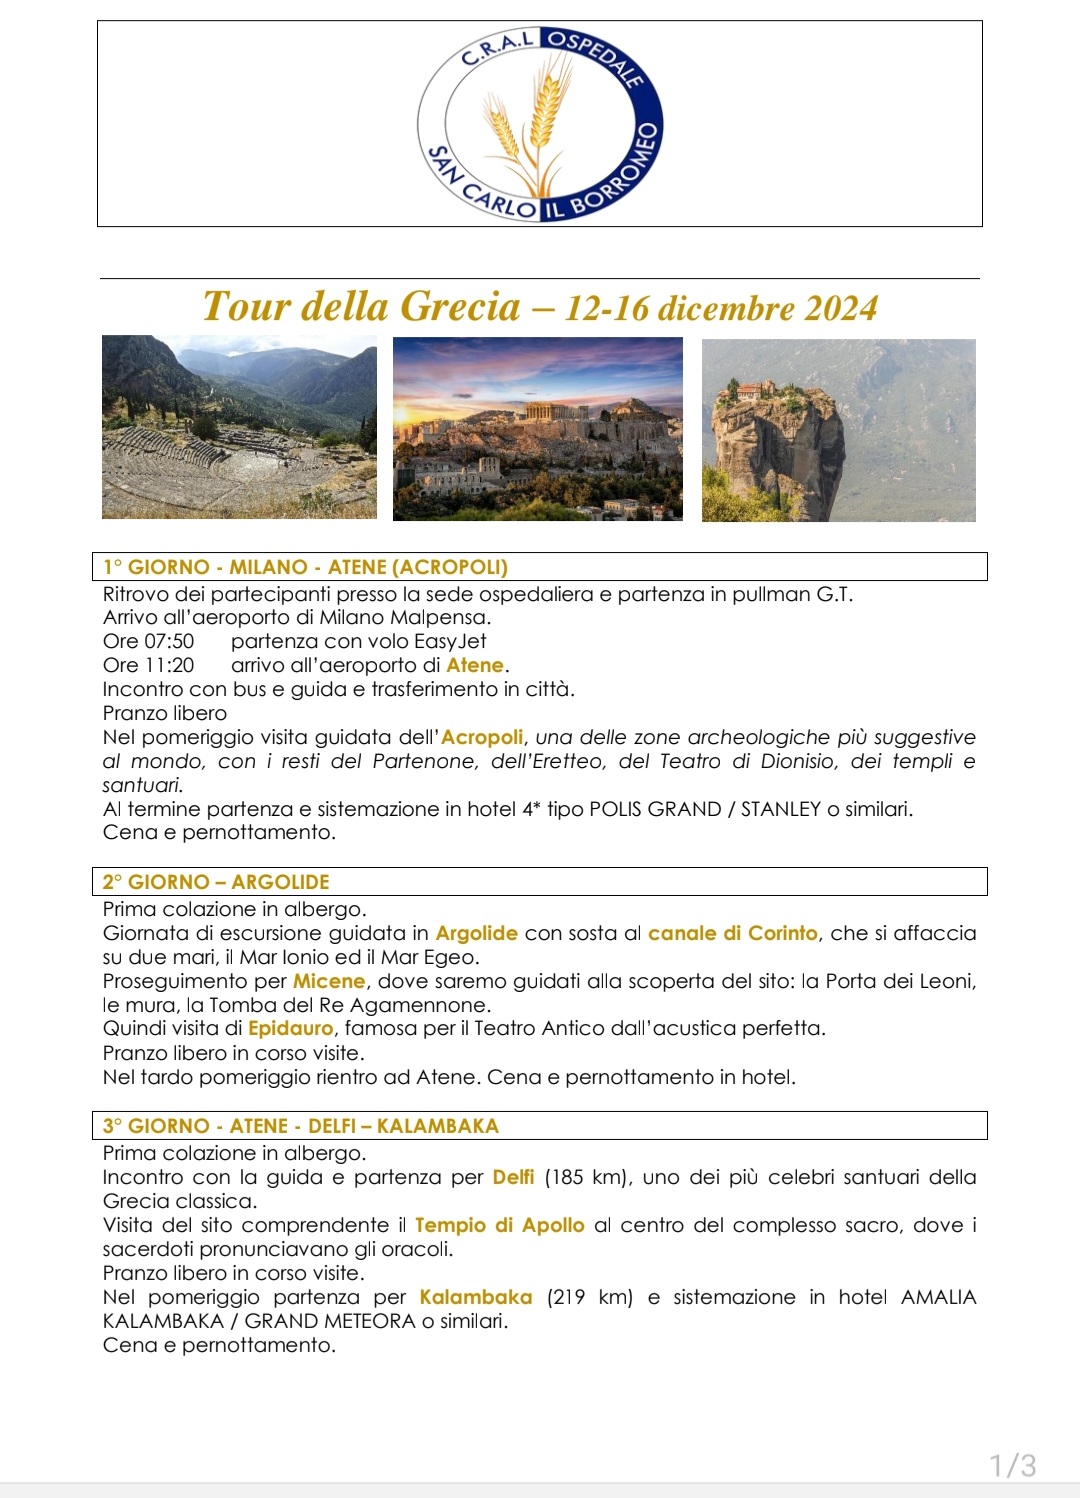 Tour della Grecia. Dal 12 al 16 dicembre 